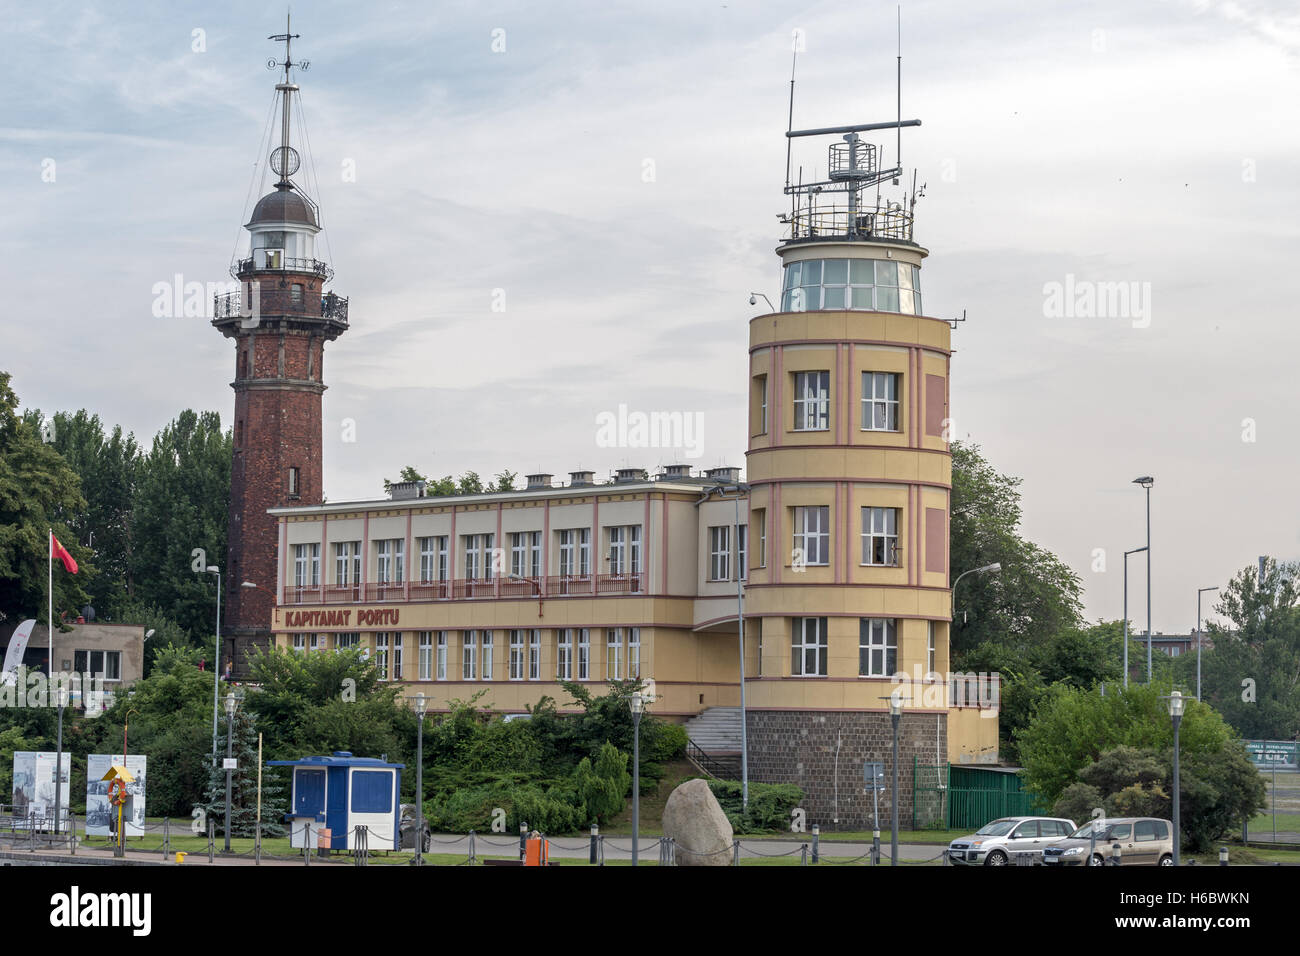 Nowy Port, lighthouse, Westerplatte, Gdansk, Poland Stock Photo - Alamy